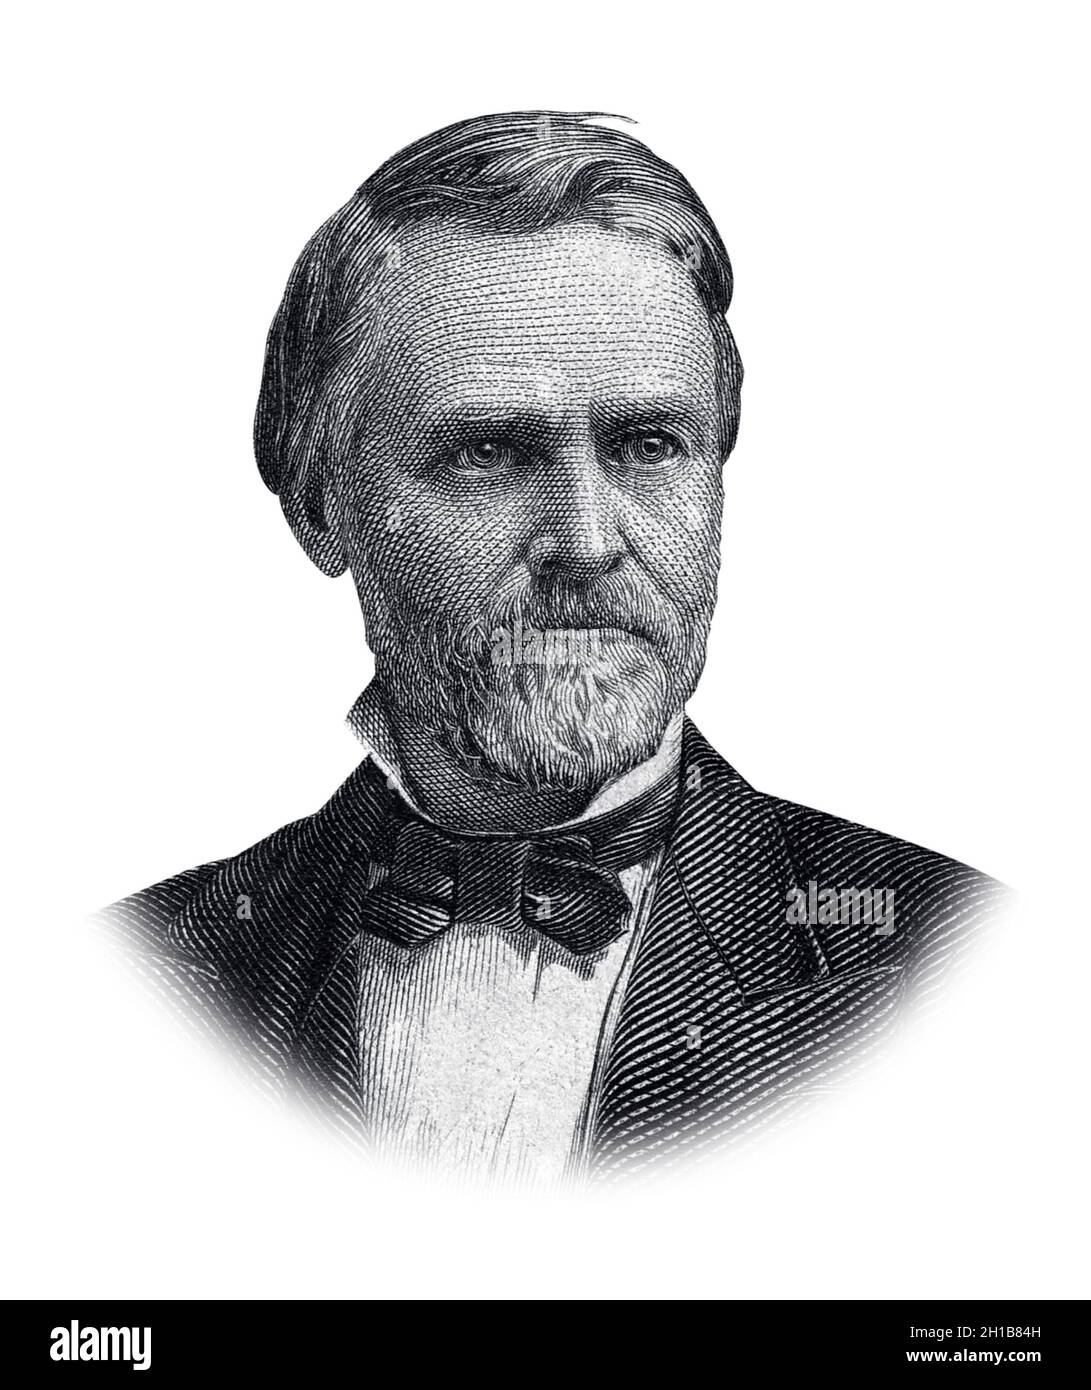 Portrait of John Sherman Isolated on White Background Stock Photo